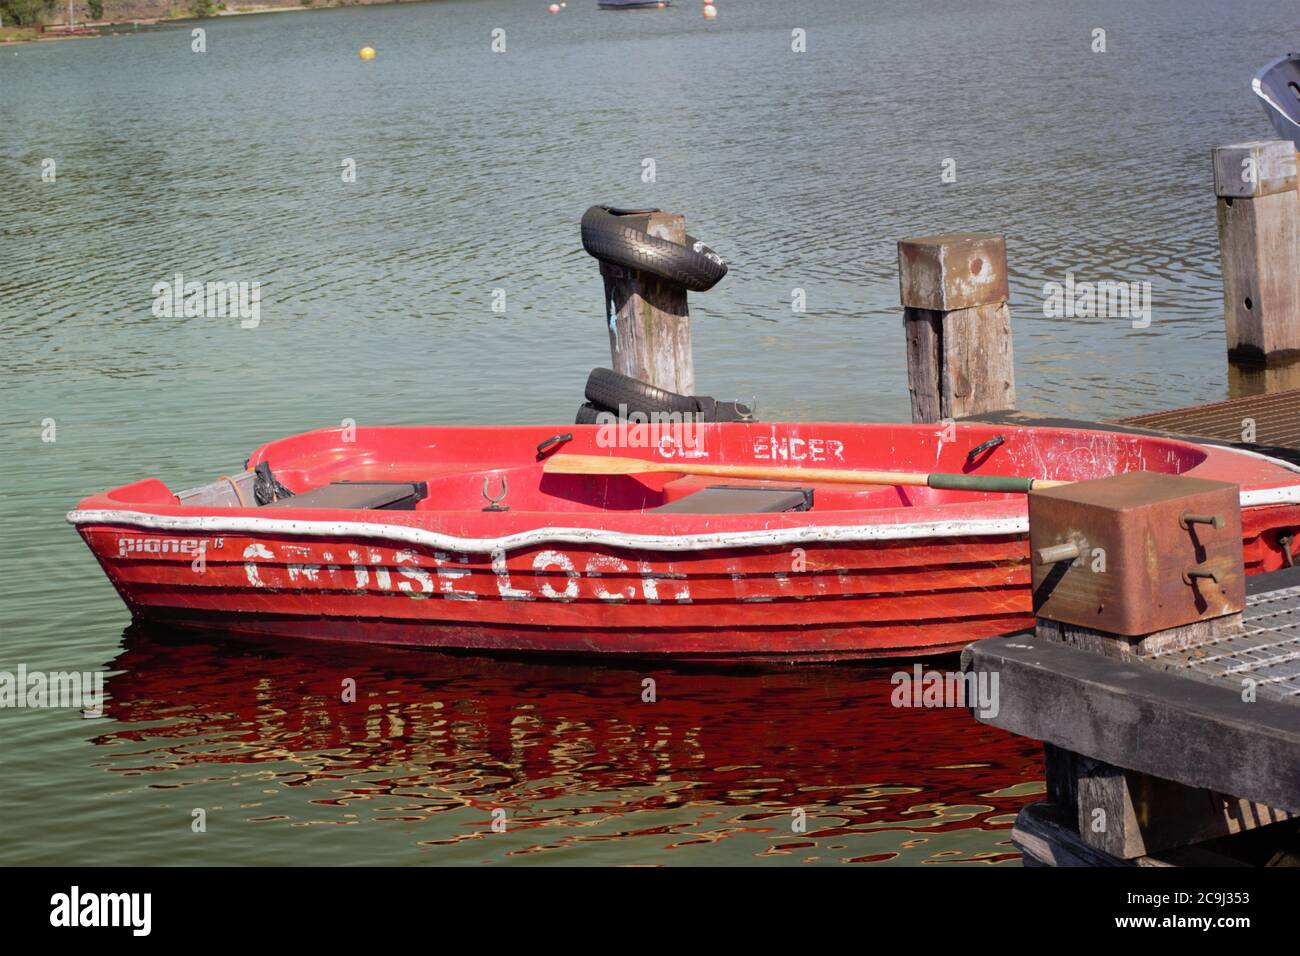 Read boat on Loch Lomond in Scotland, UK Stock Photo